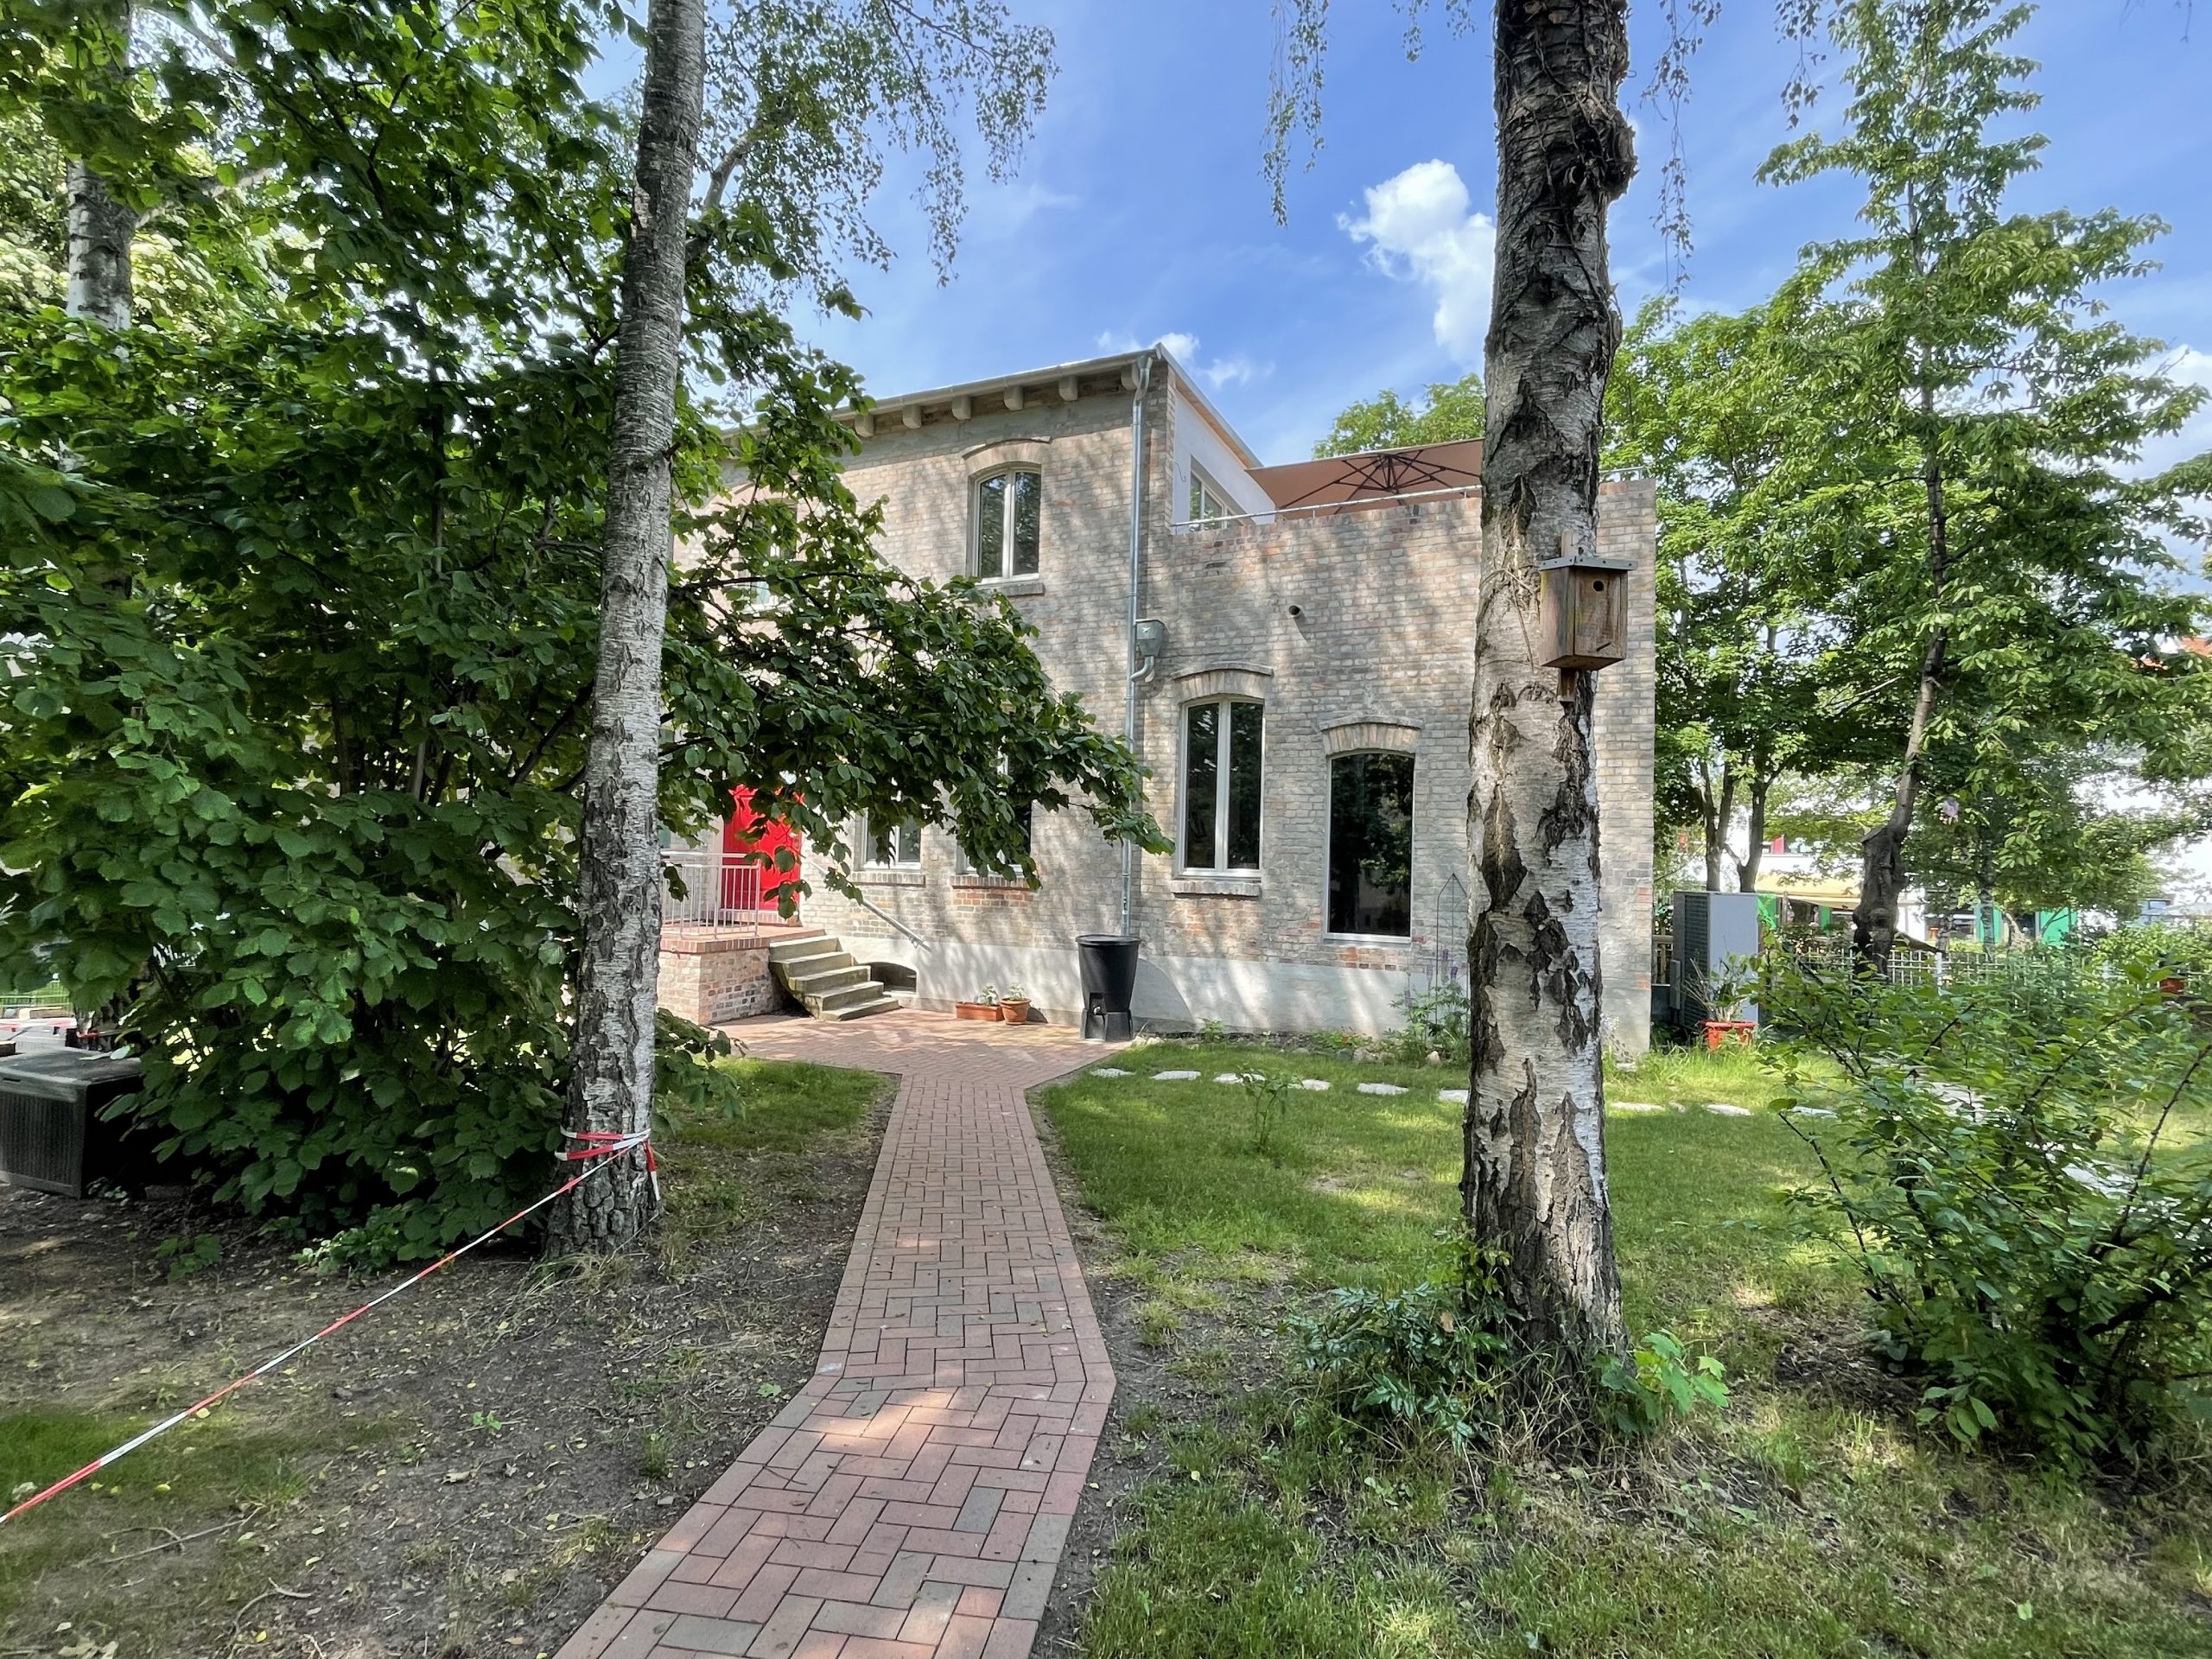 Fotografie des Hinterhauses Glauchaviertel mit dem Weg zum Haus durch den Garten und zwei Bäumen im Vordergrund und einem Baum rechts neben dem Haus im Hintergrund.